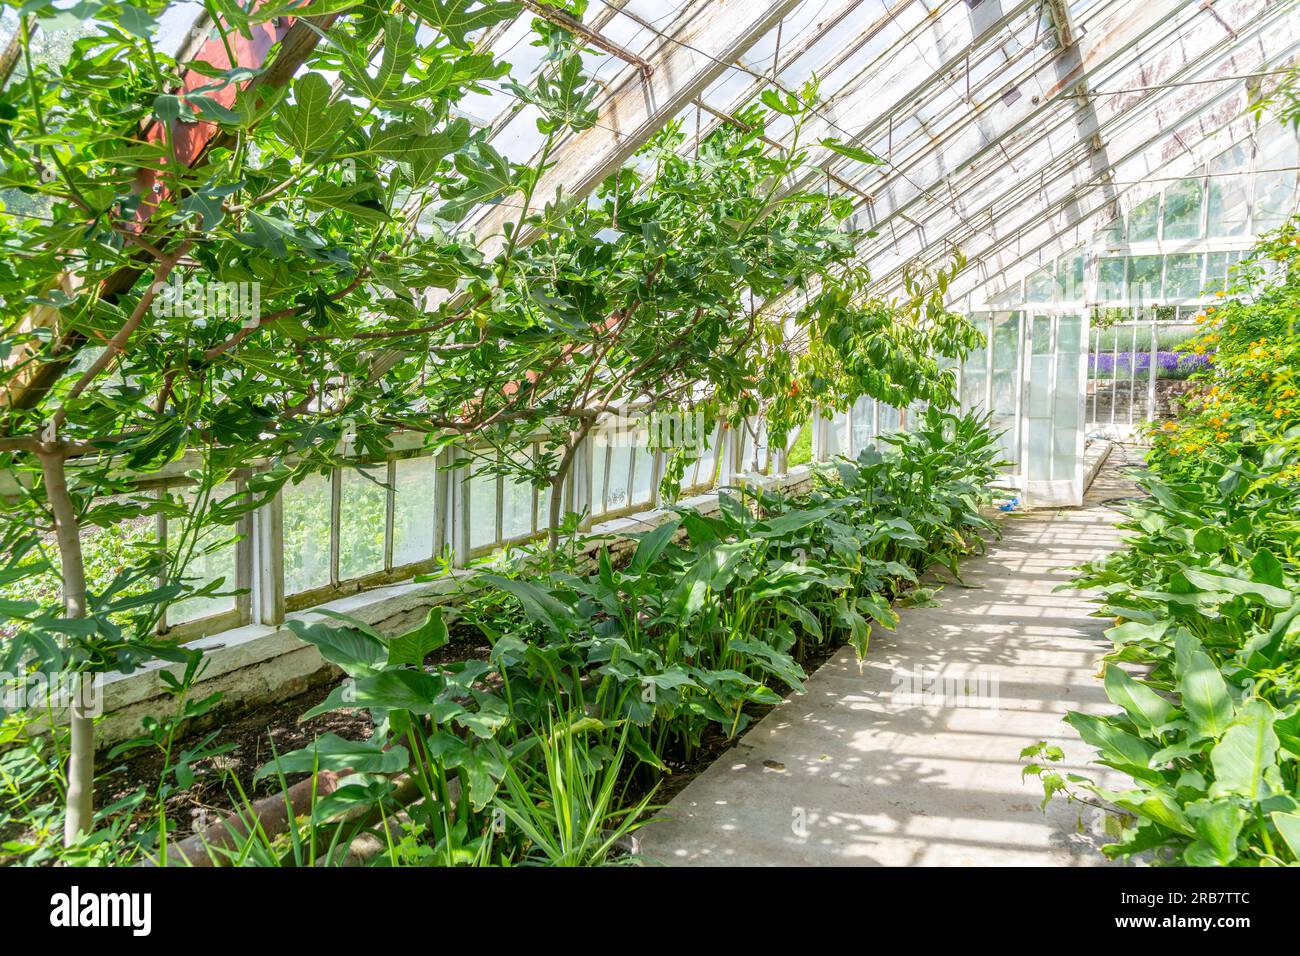 Plantas que crecen dentro de invernadero, jardín de cocina amurallado Redisham Hall jardines y vivero de plantas, Redisham, Suffolk, Inglaterra, Reino Unido Foto de stock